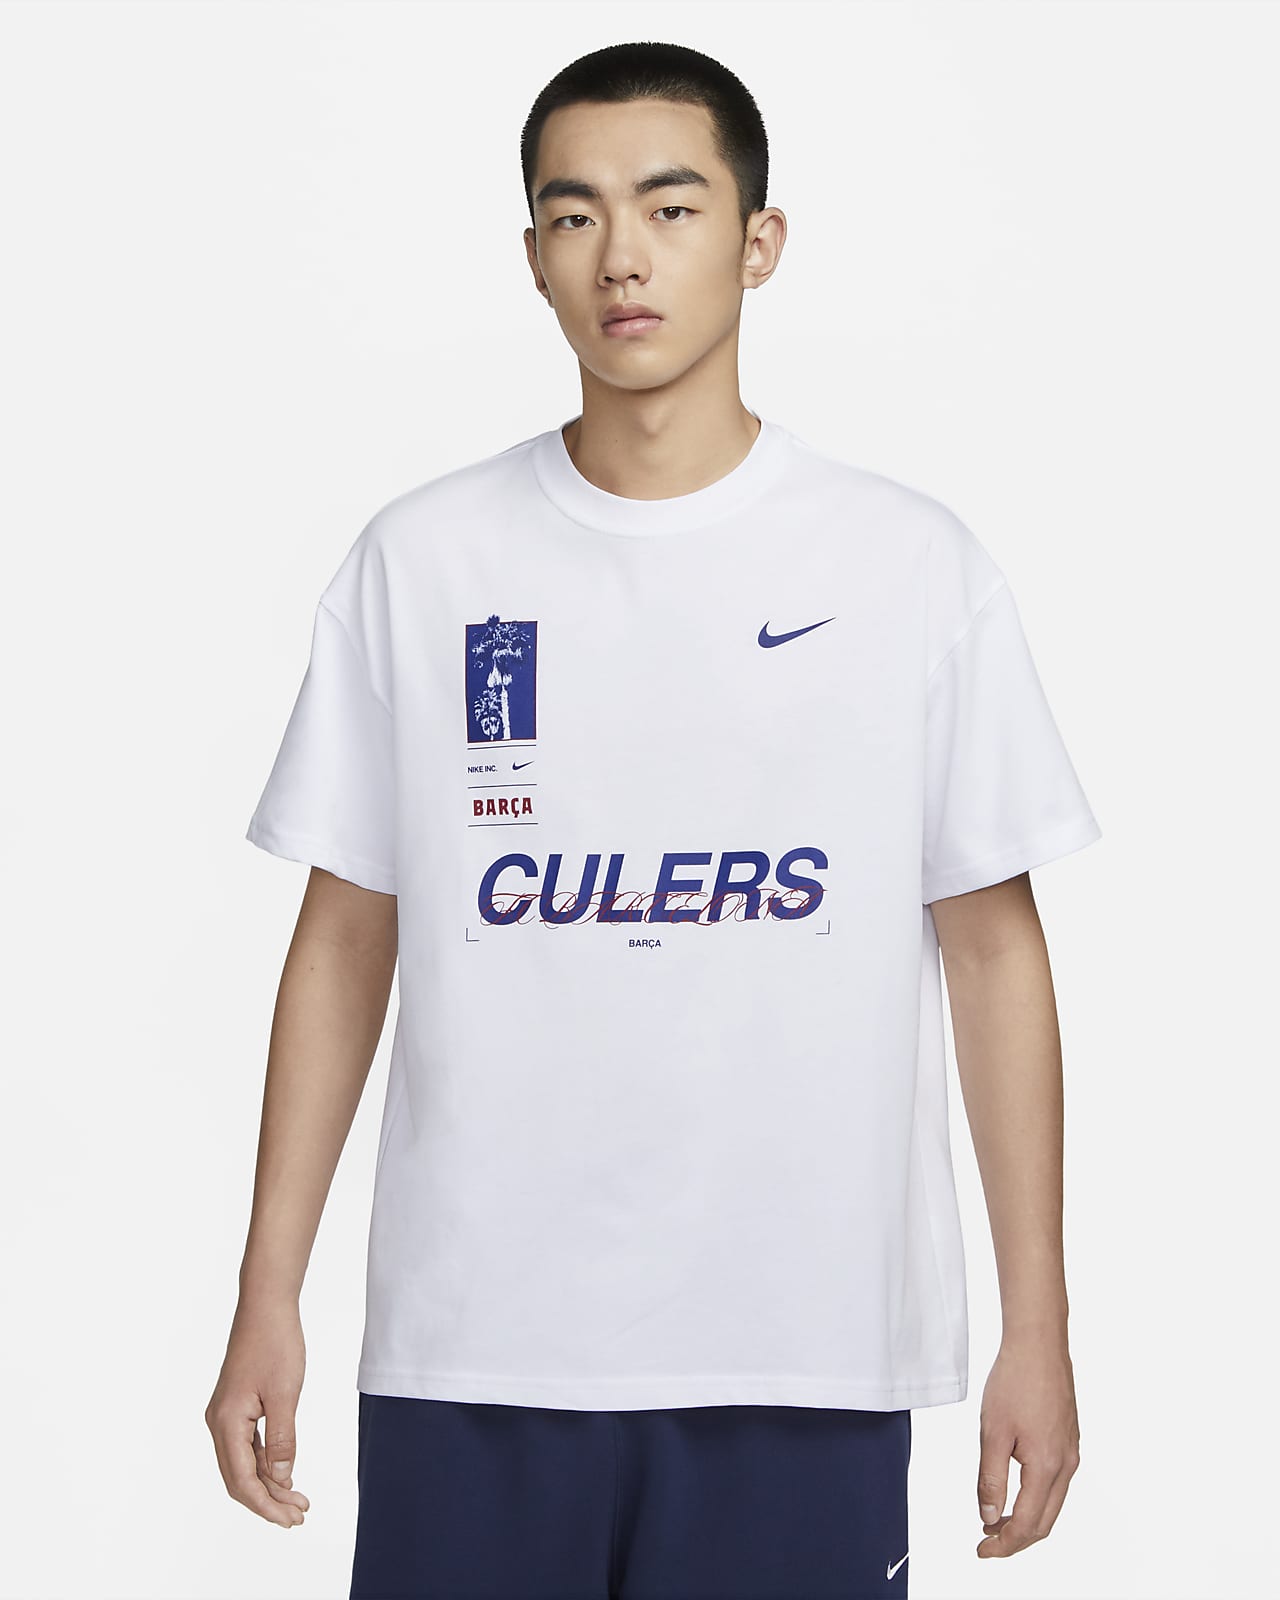 FC Barcelona Men's Nike Max90 Soccer T-Shirt